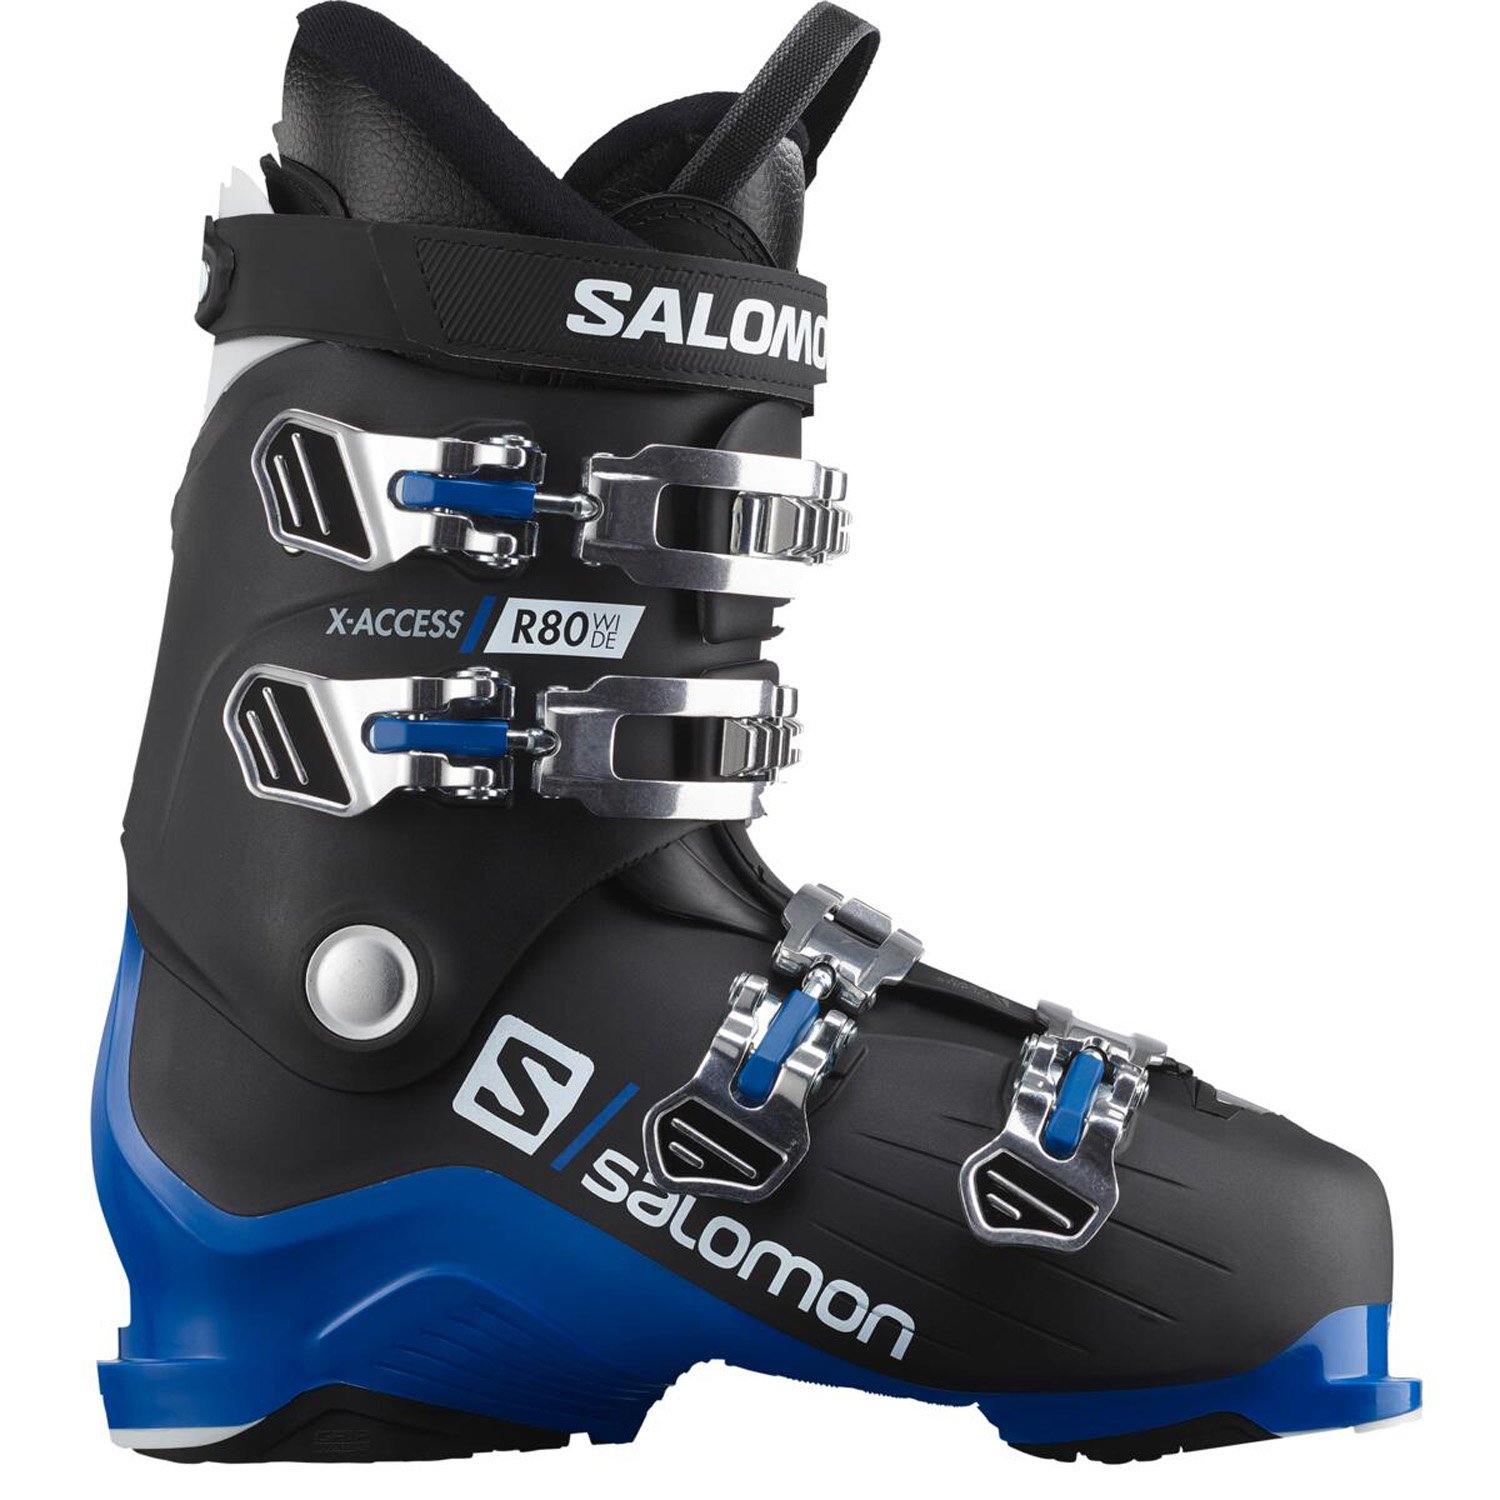 Salomon X Access R80 Wide Kayak Ayakkabısı - Renkli - 1